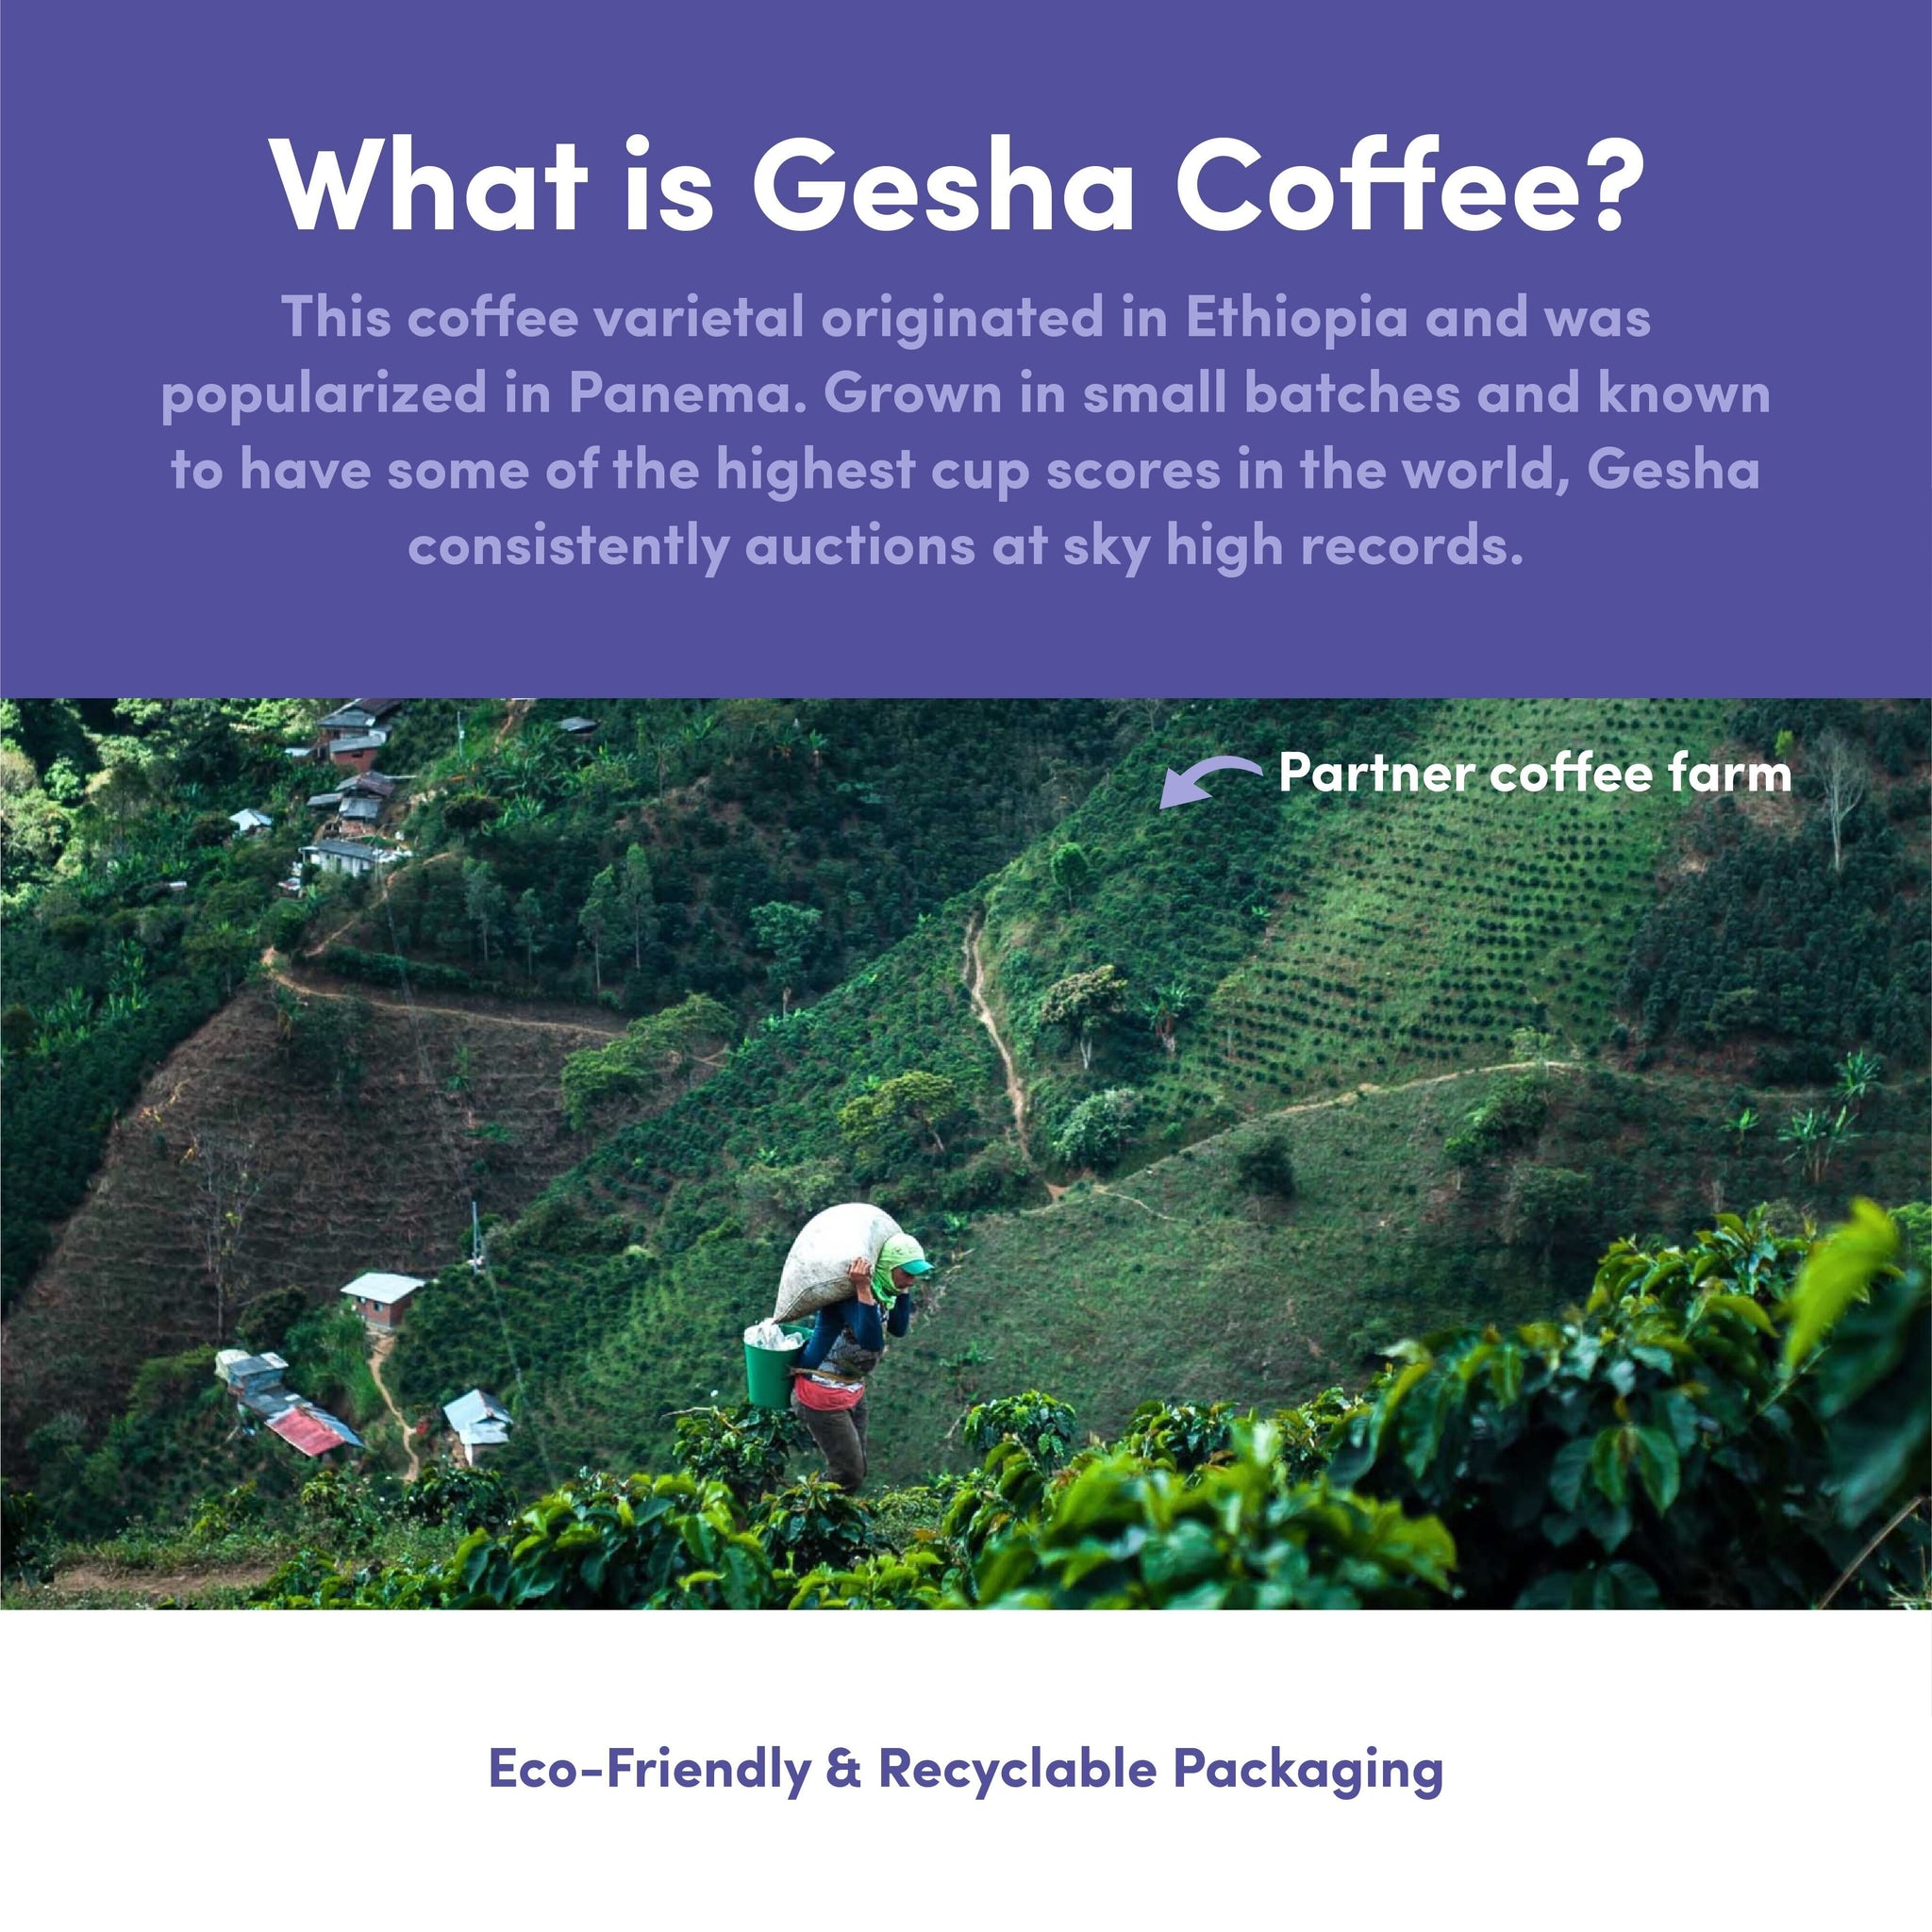 La Colombia Gesha Coffee